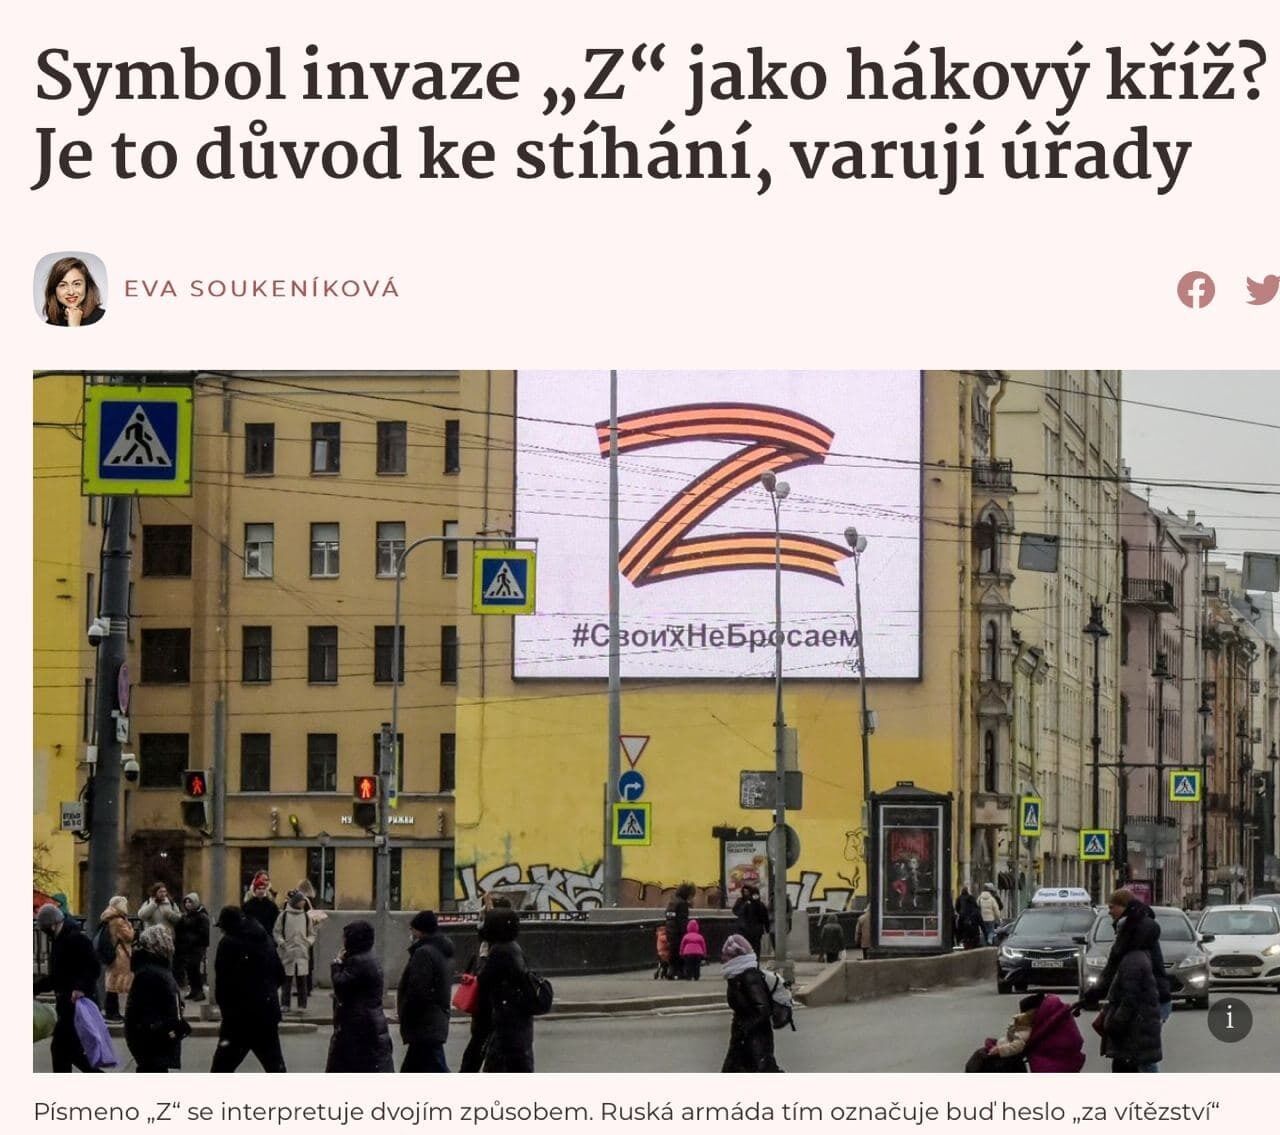 В Чехии заявили, что демонстрацию символа ''Z'' могут приравнять к демонстрации свастики